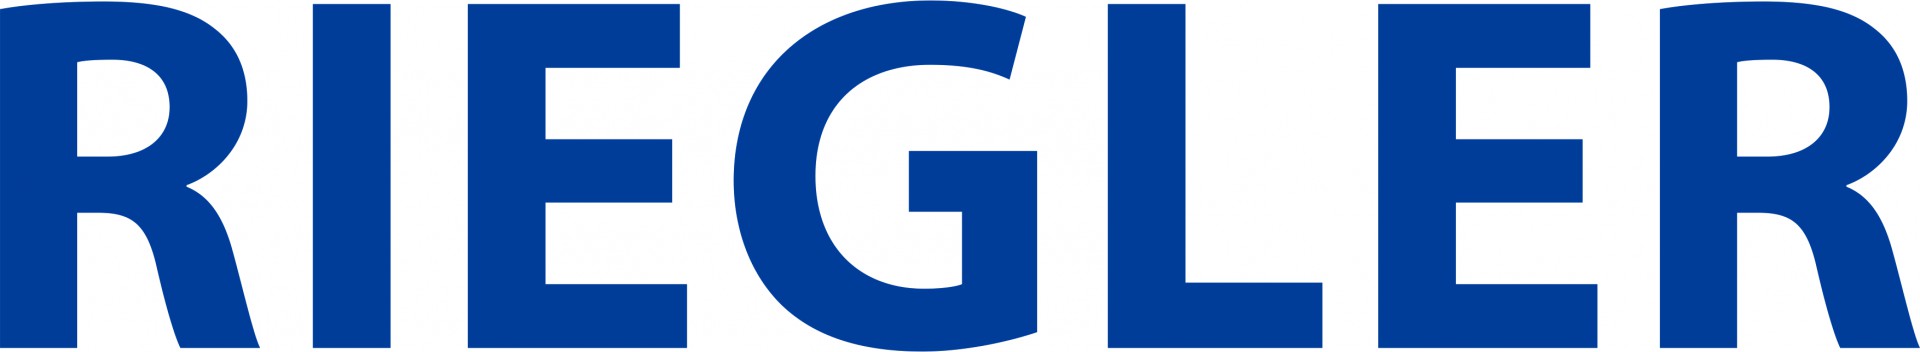 Riegler_Logo_CMYK